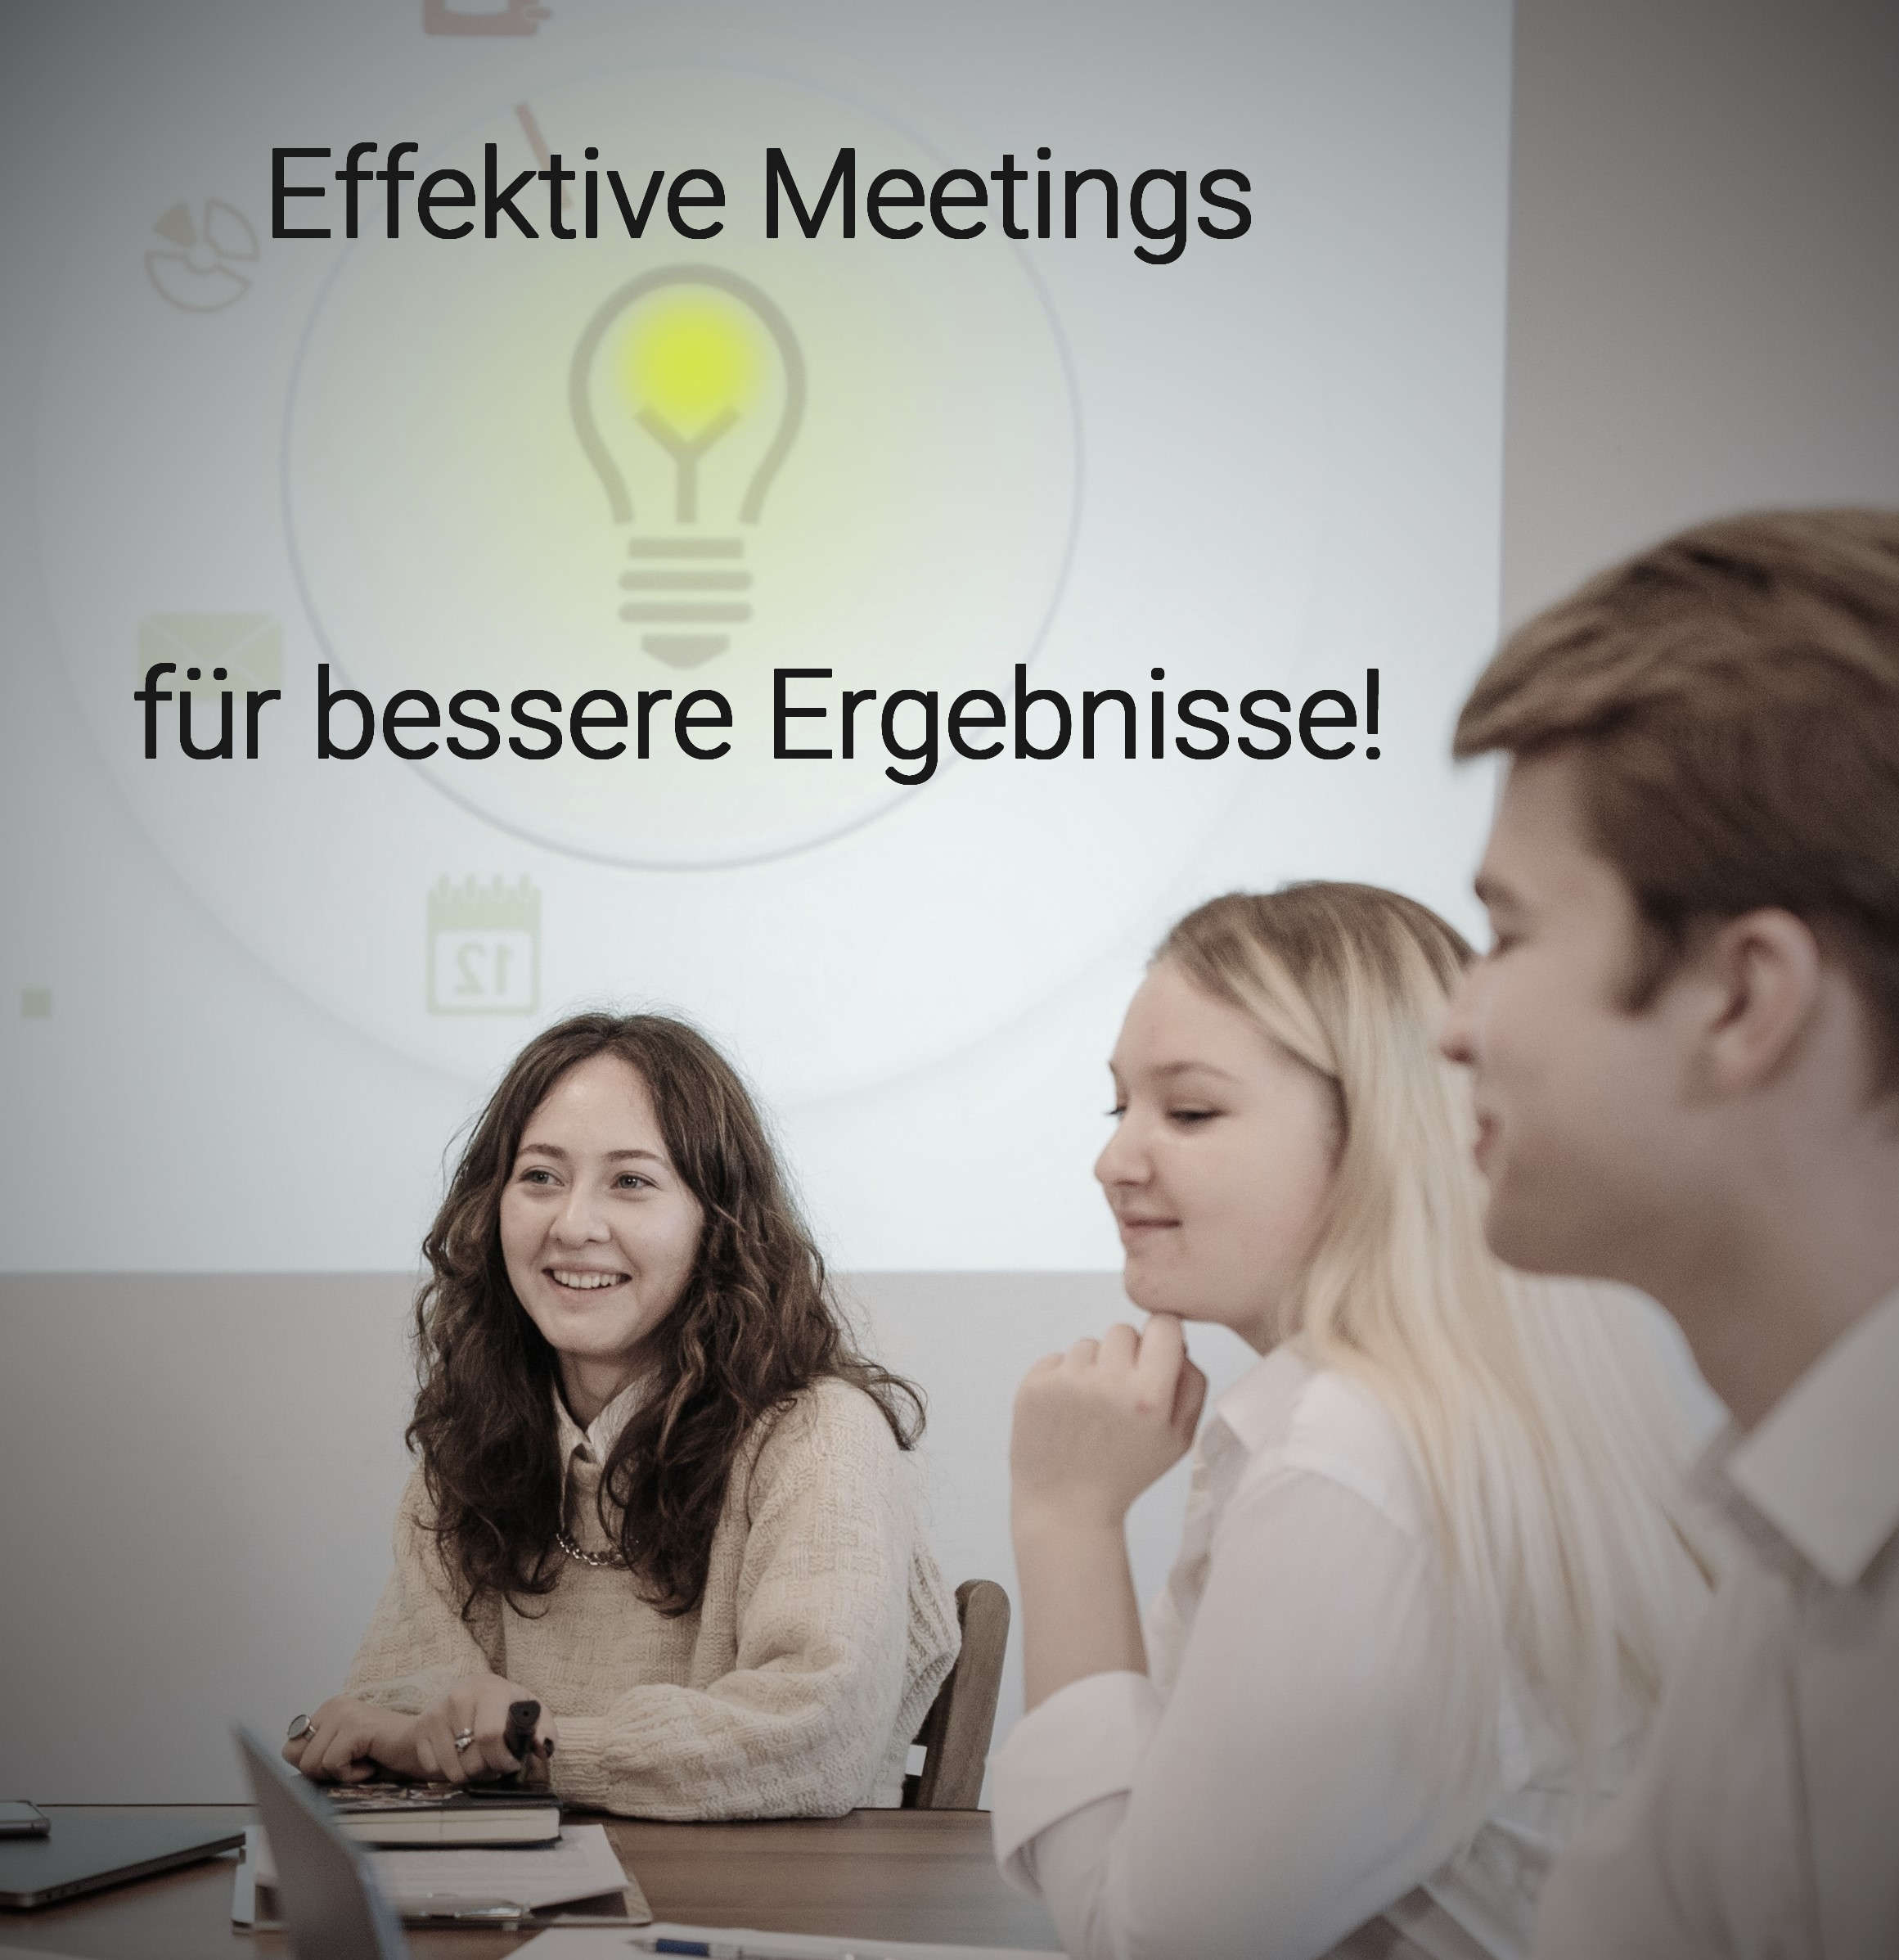 Steigern Sie den Erfolg Ihrer Besprechungen mit einer effektiven Meeting-Struktur und optimierten Techniken für produktive und ergebnisorientierte Meetings: